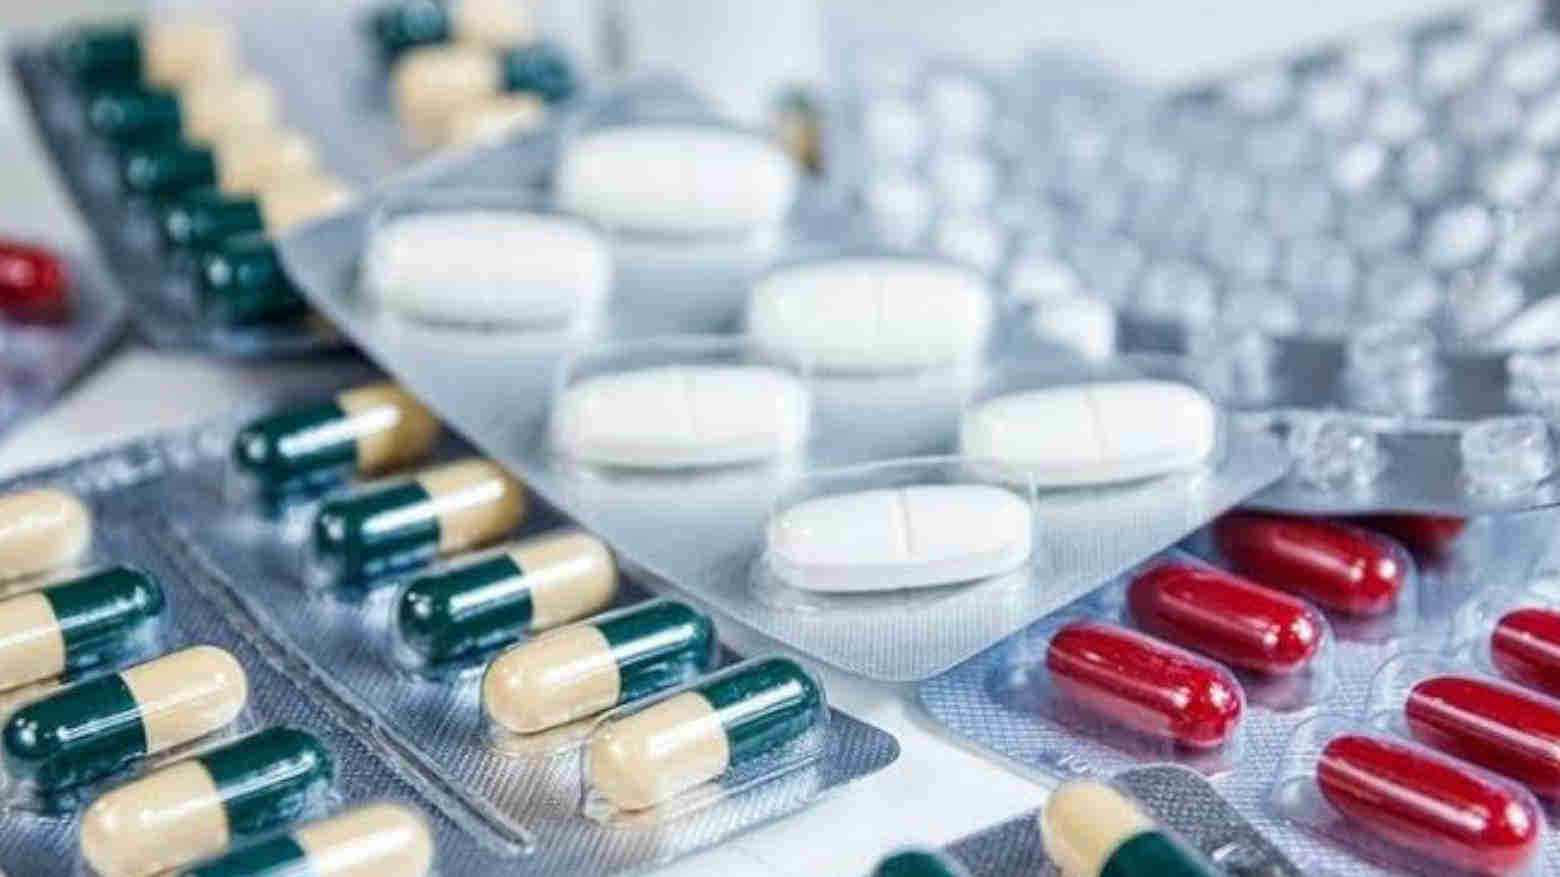 Masyarakat Diminta Laporkan Bila Temukan Kenaikan Harga Obat-obatan Berlebihan